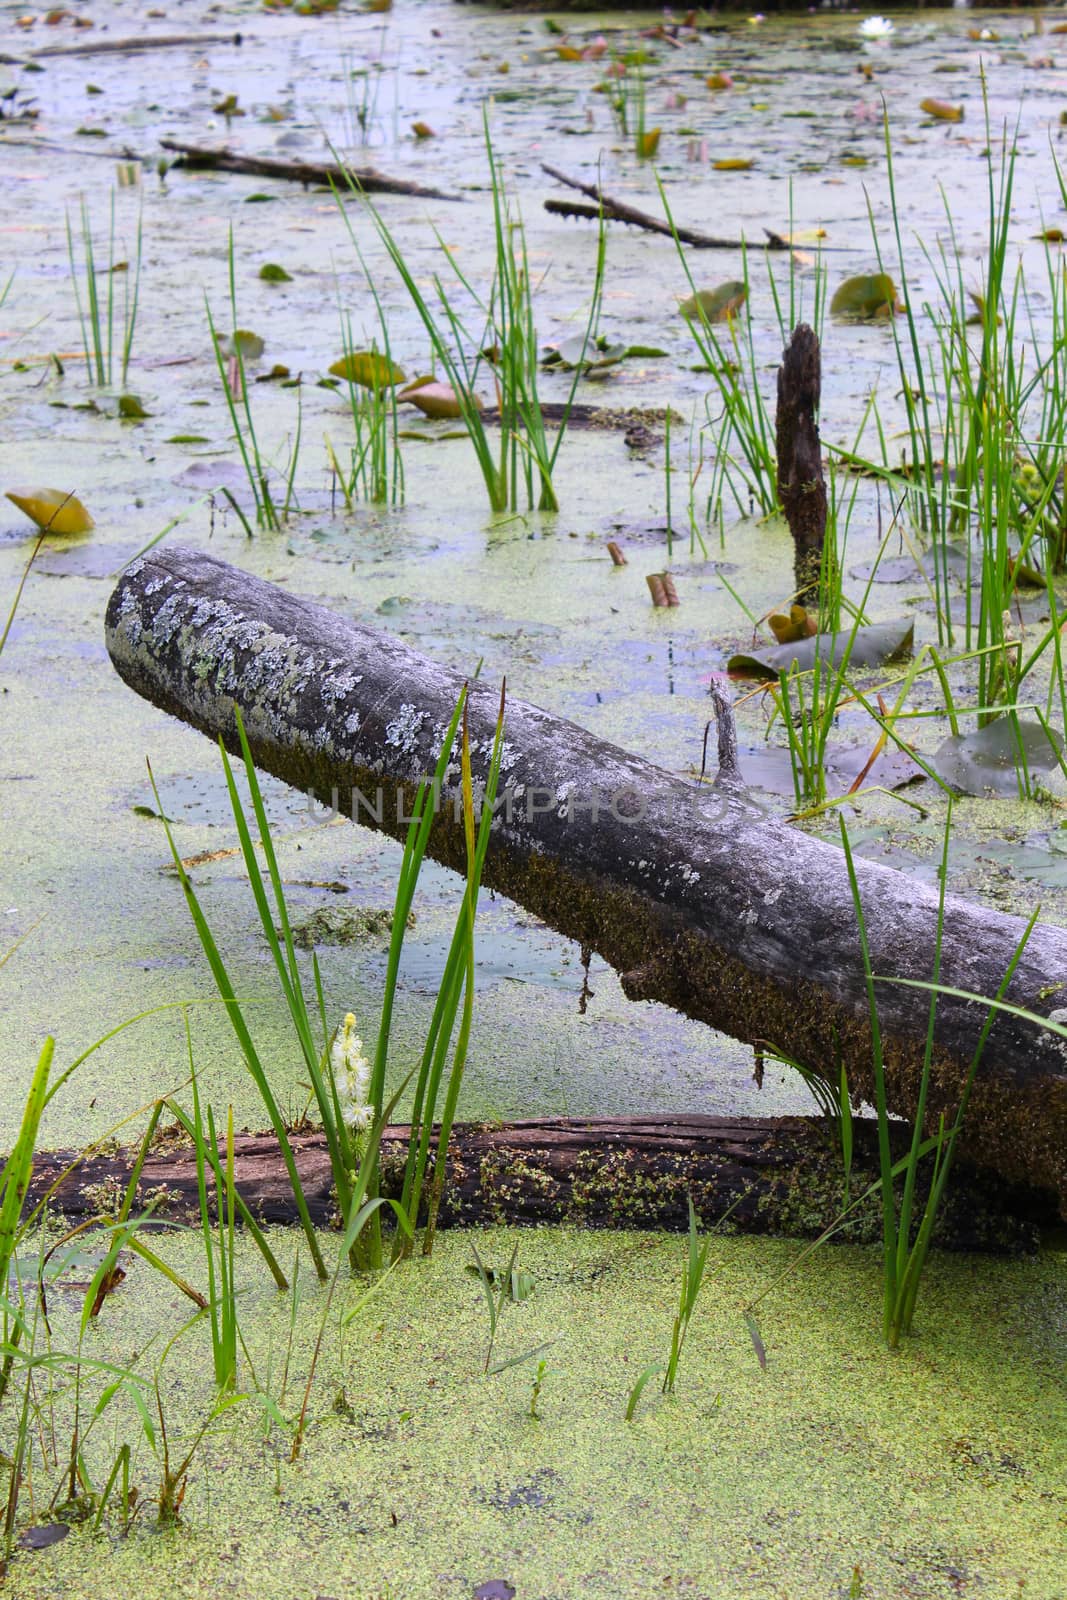 Swamp Log by Catmando